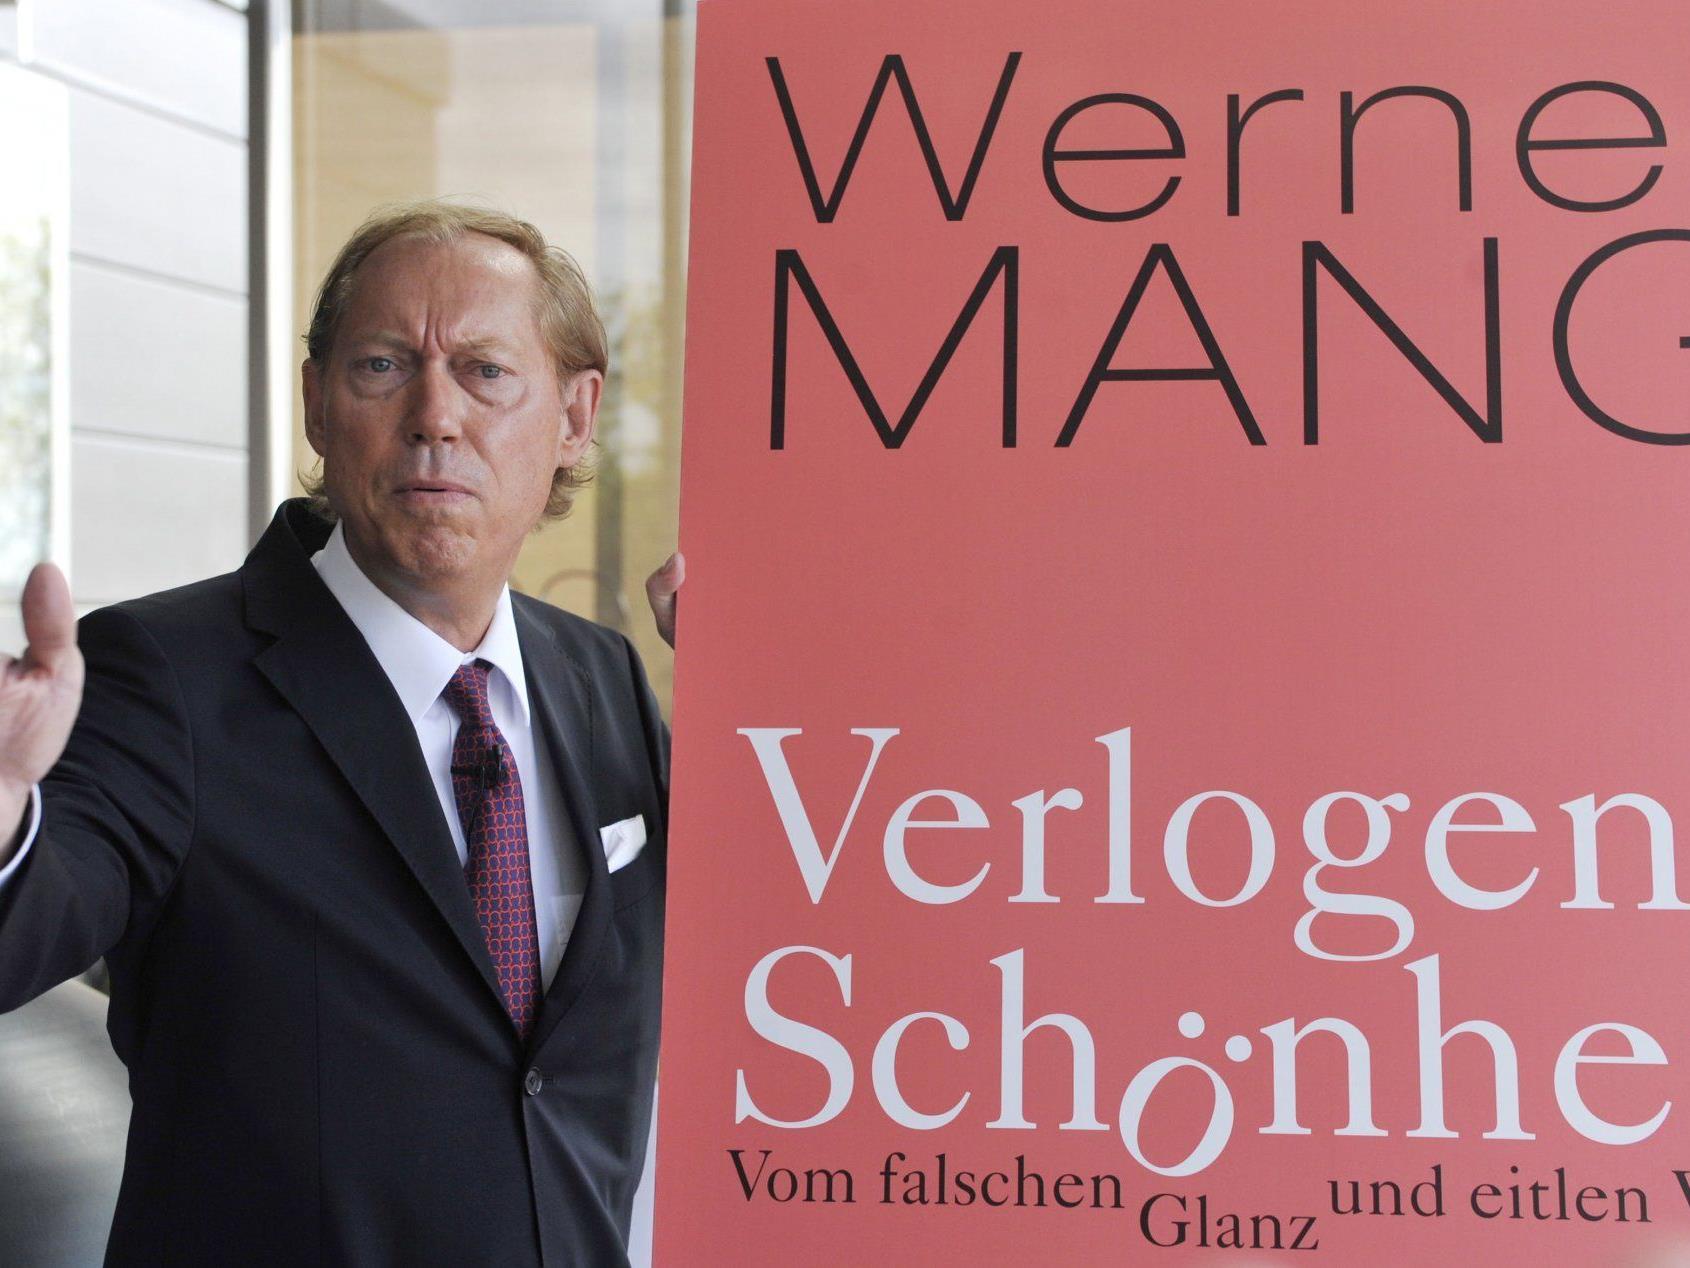 Werner Mang und sein Buch "verlogene Schönheit": Gegen den Autor und Chirurgen wird ermittelt.